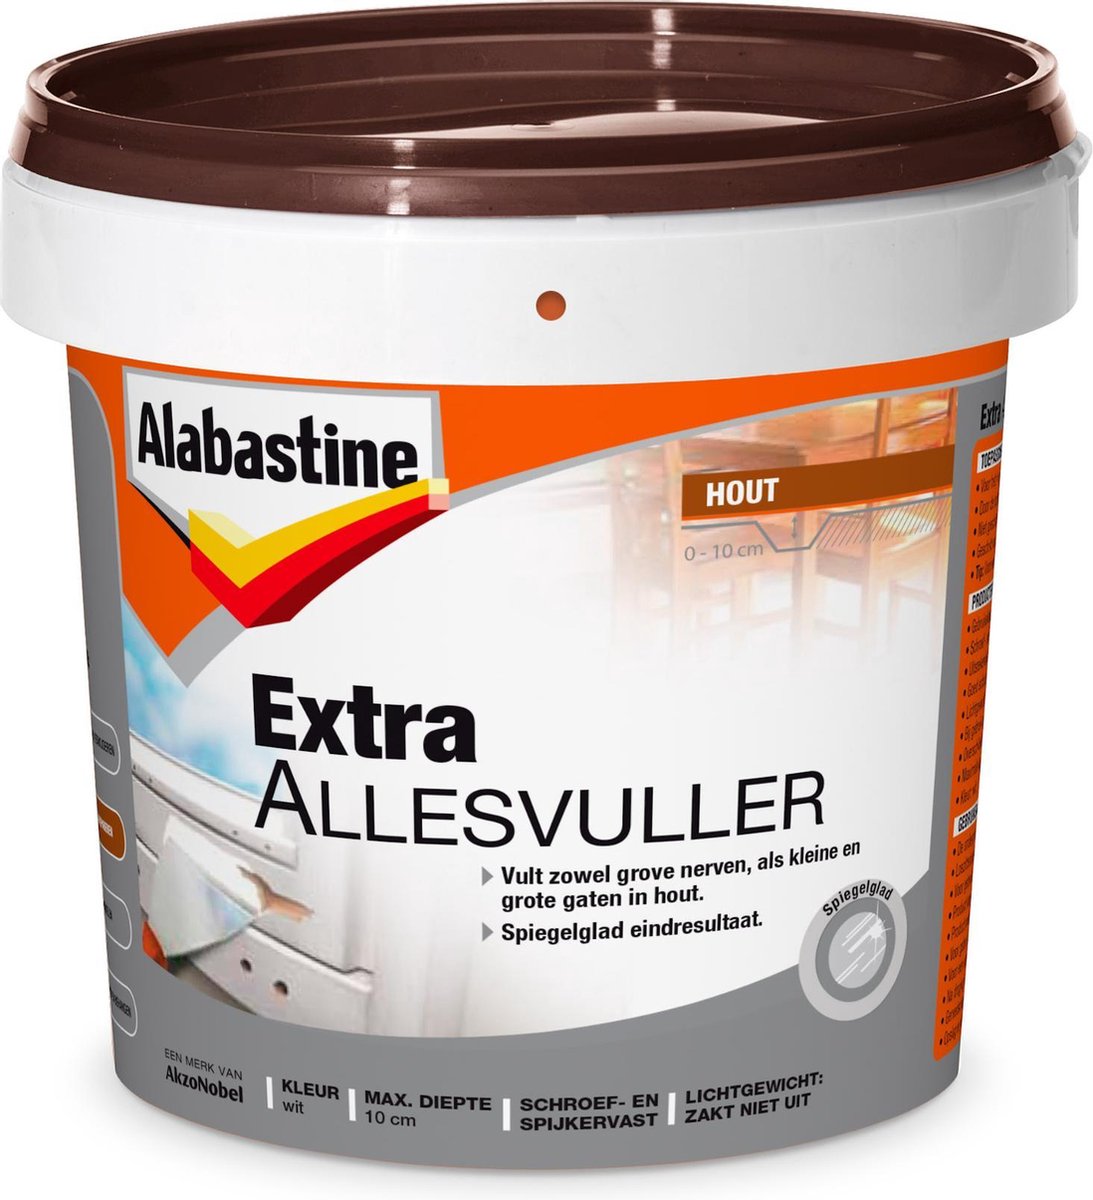 Alabastine Extra Allesvuller Hout 500ml